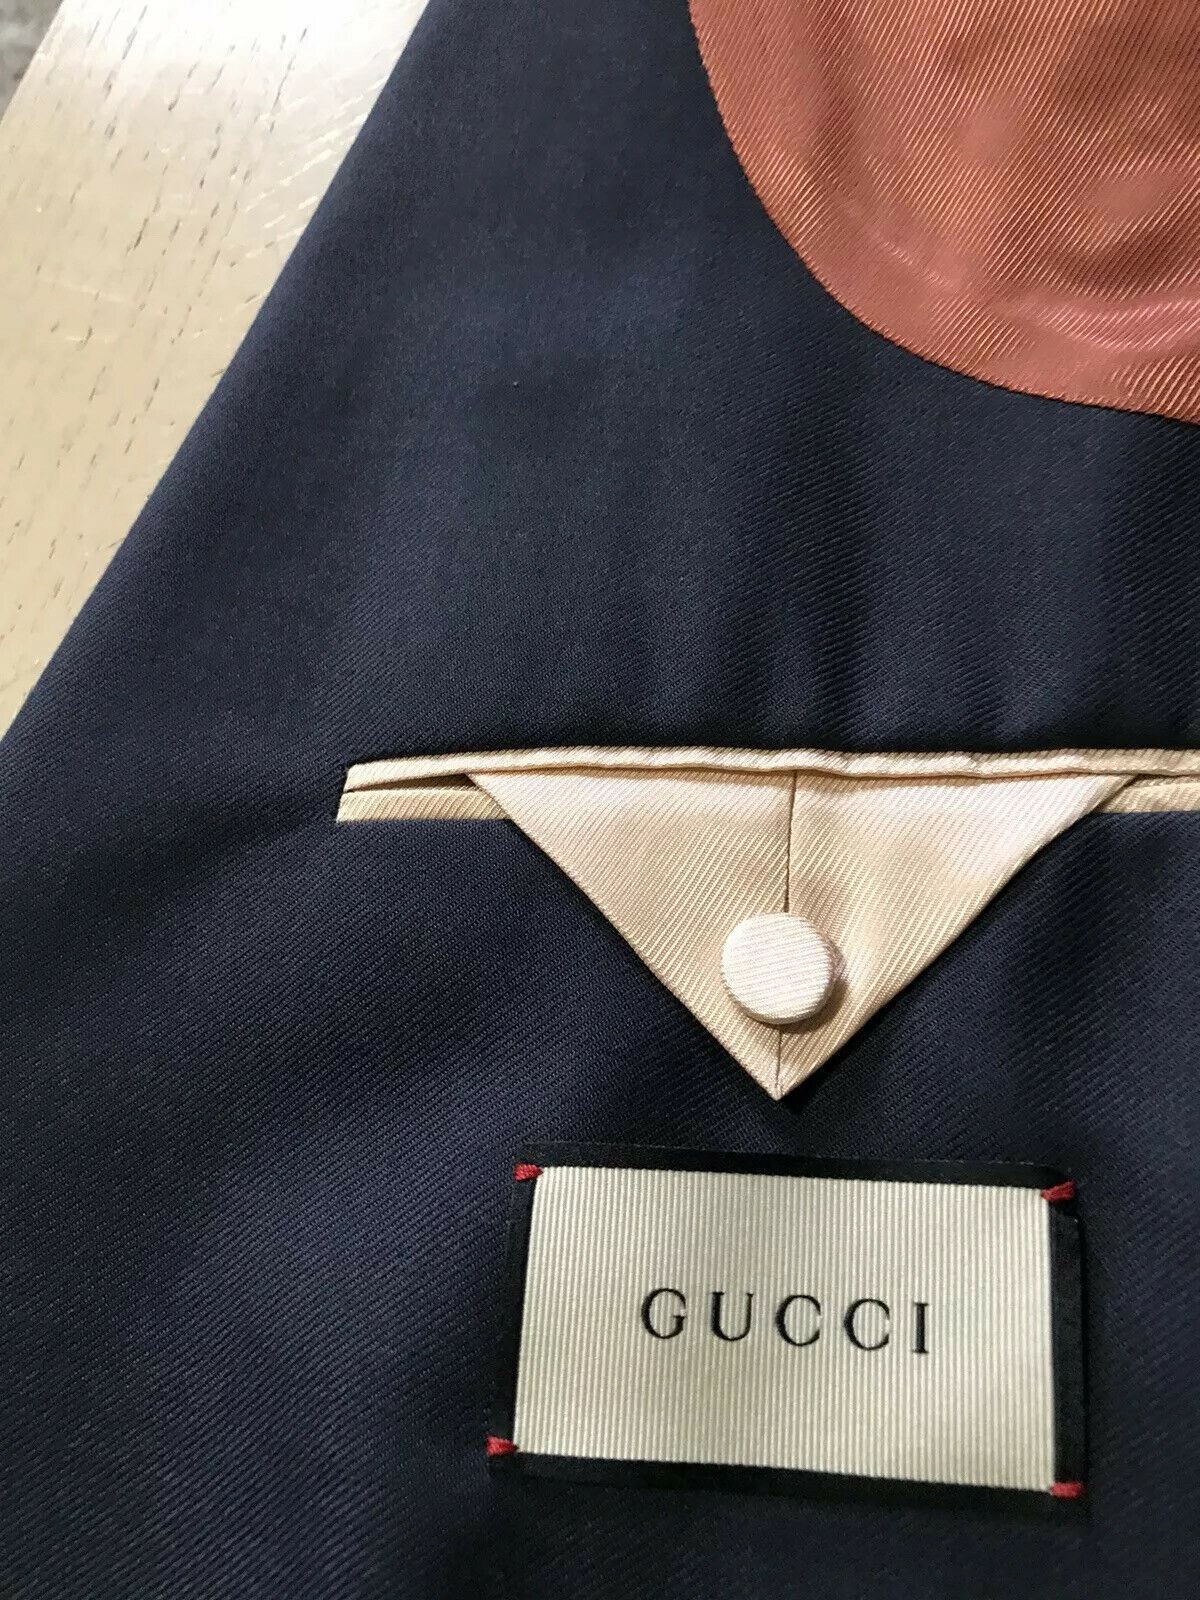 NWT $3200 Gucci Men's Sport Coat Jacket Blazer Blue 44R US ( 54R Eu ) Italy